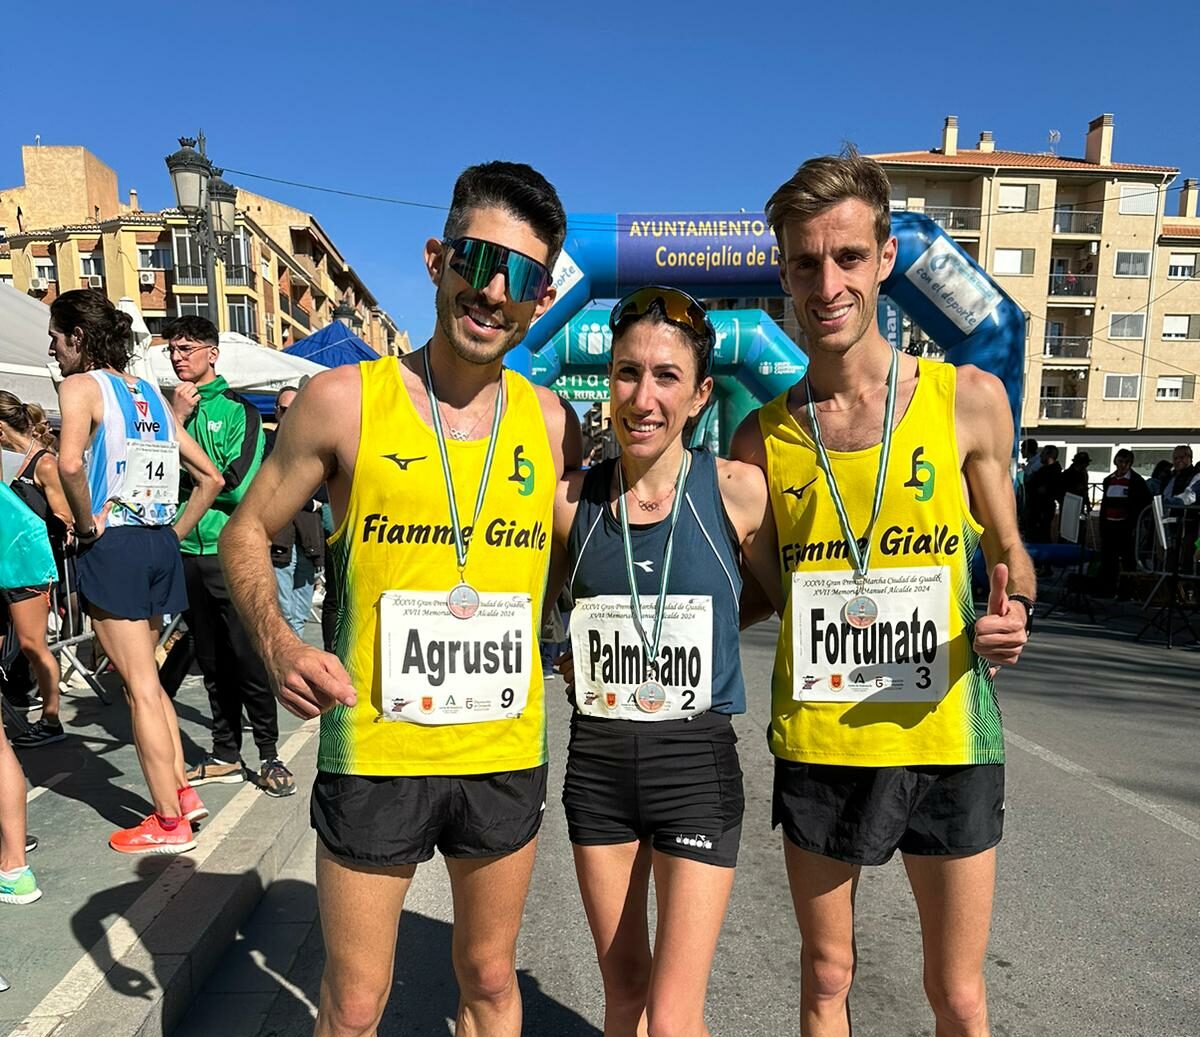 Agrusti, Palmisano e Fortunato in gara a Guadix.